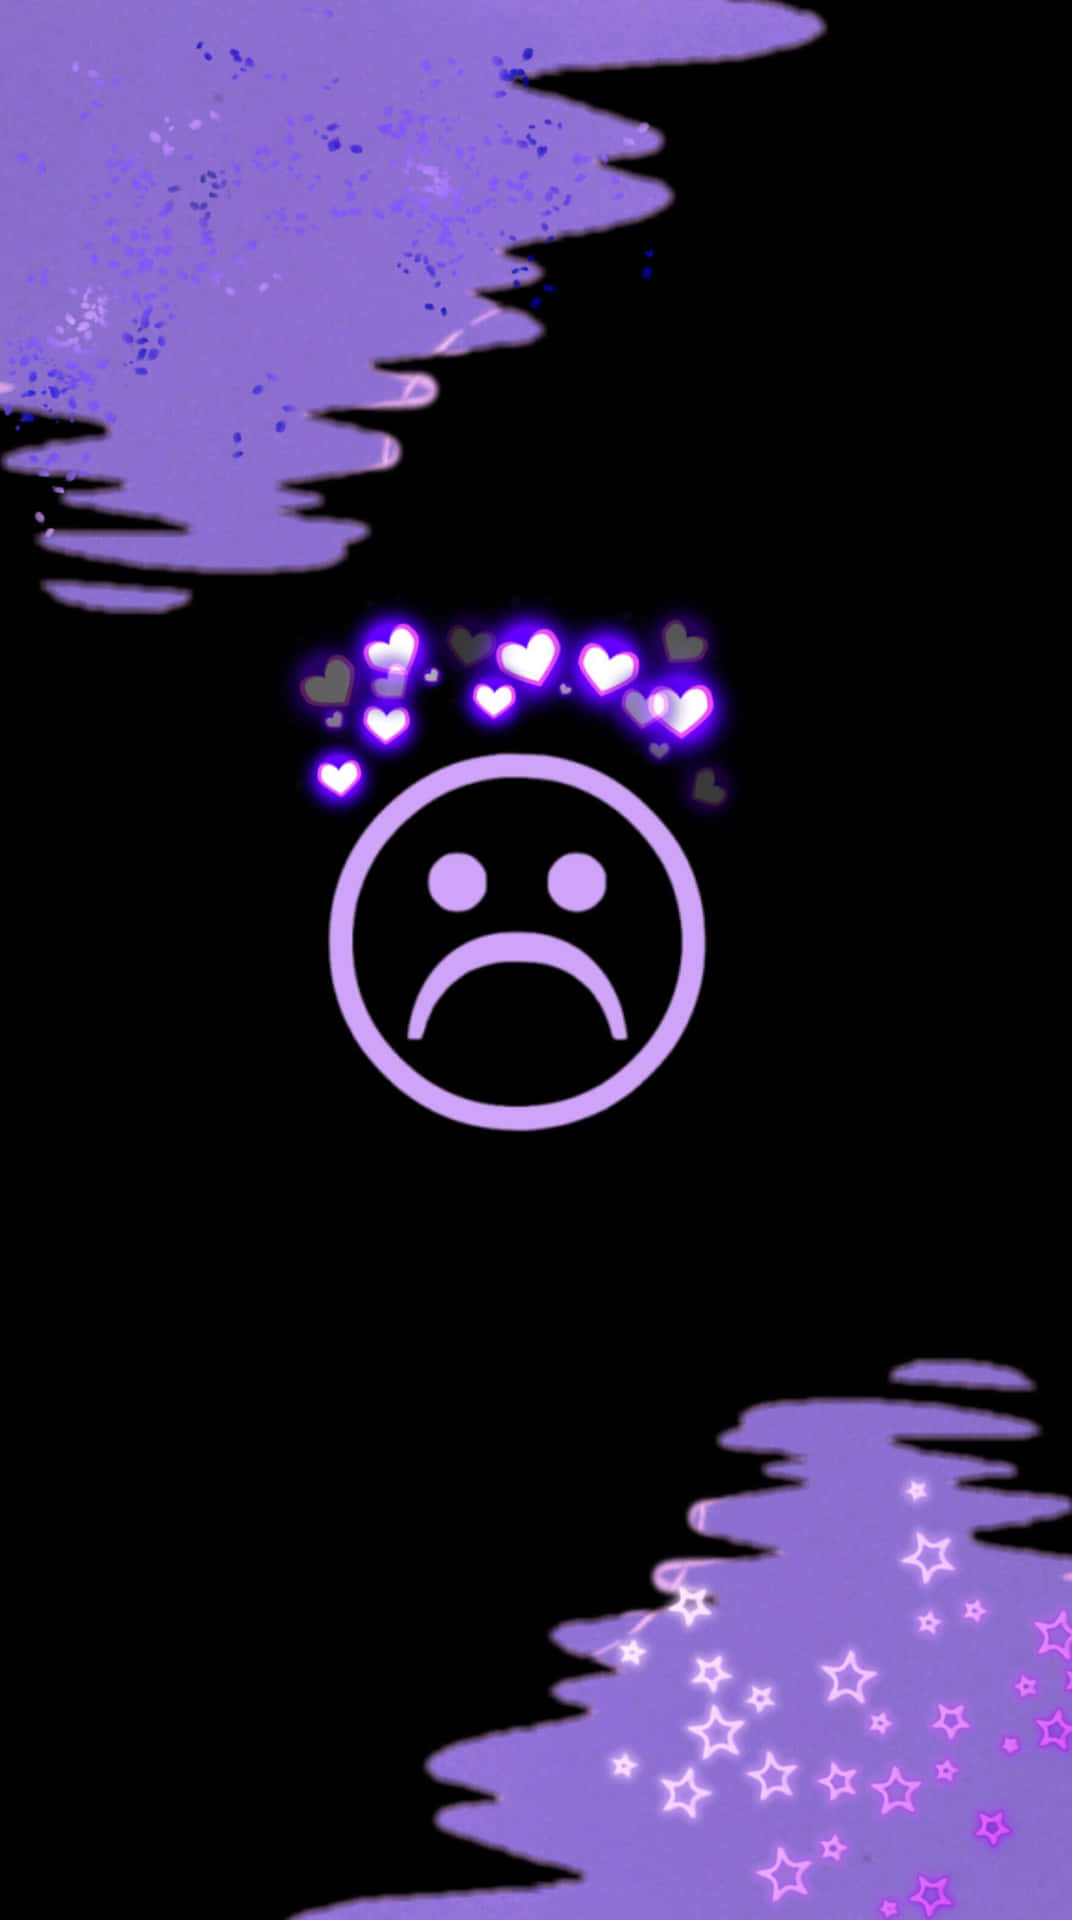 purple sad face